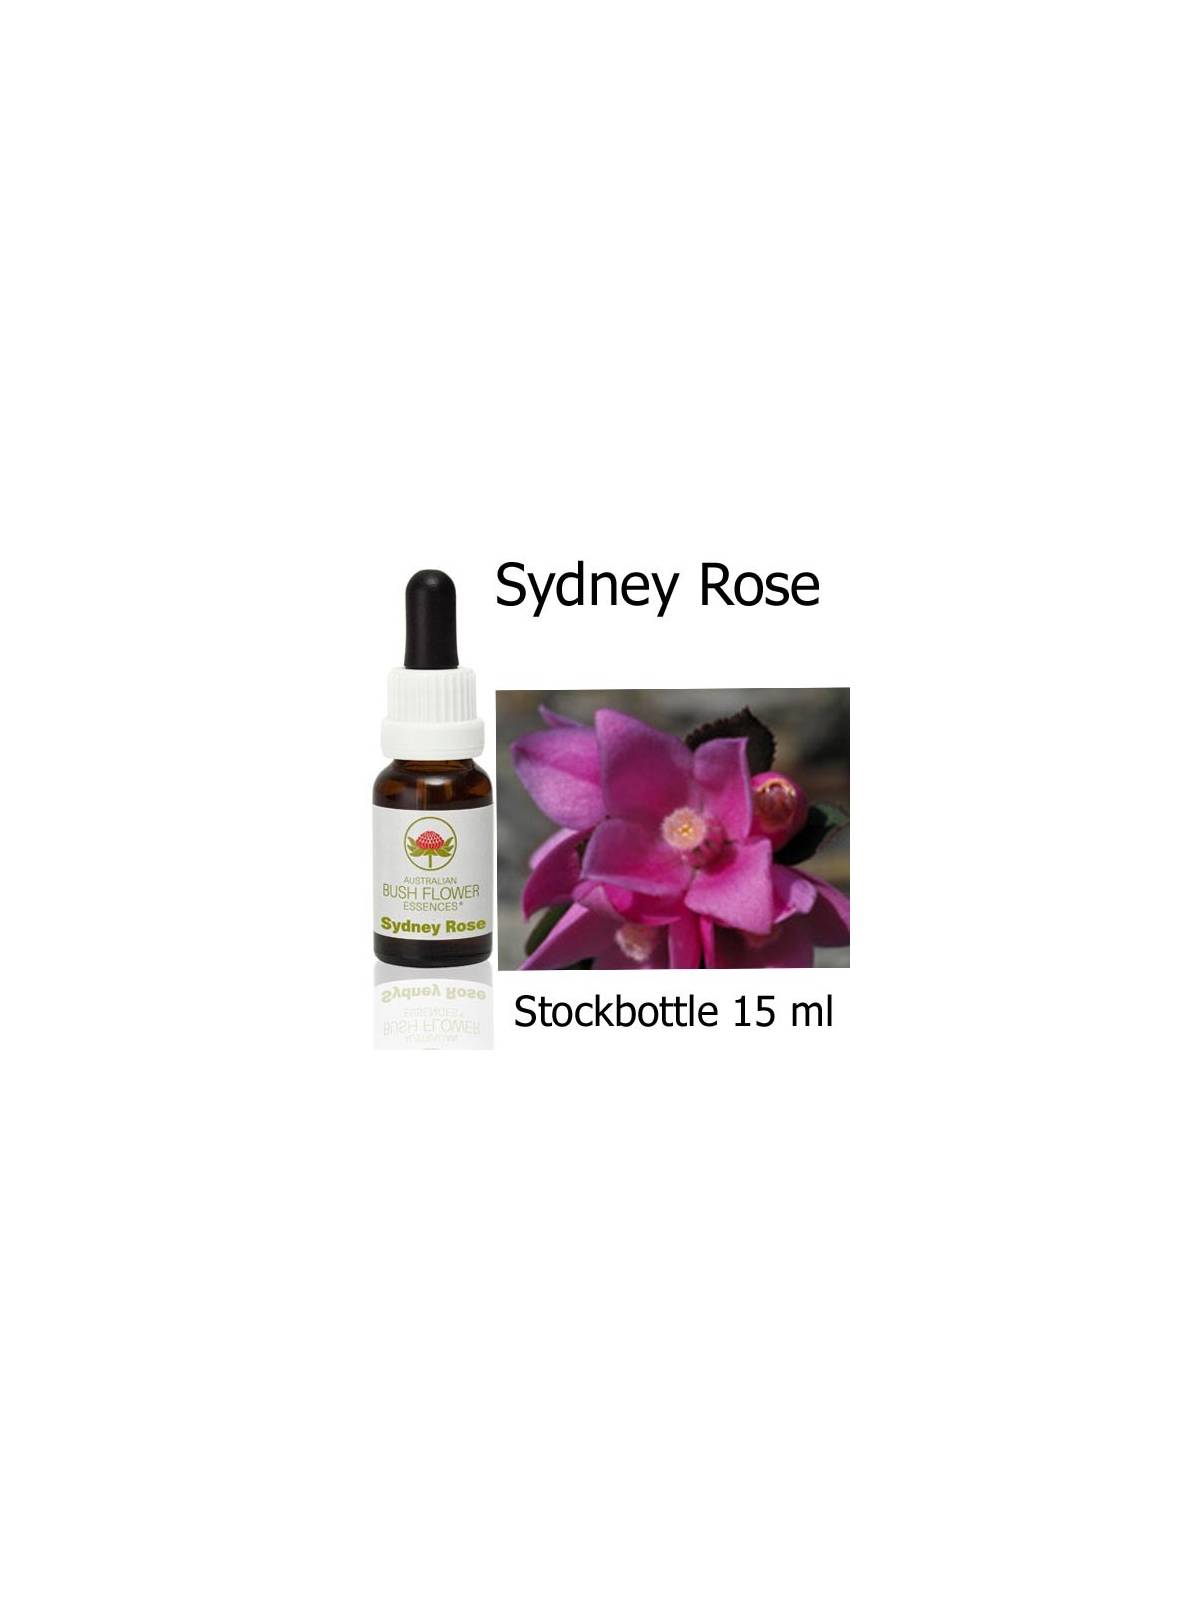 Sydney Rose Australian Bush Flower Essences stockbottles